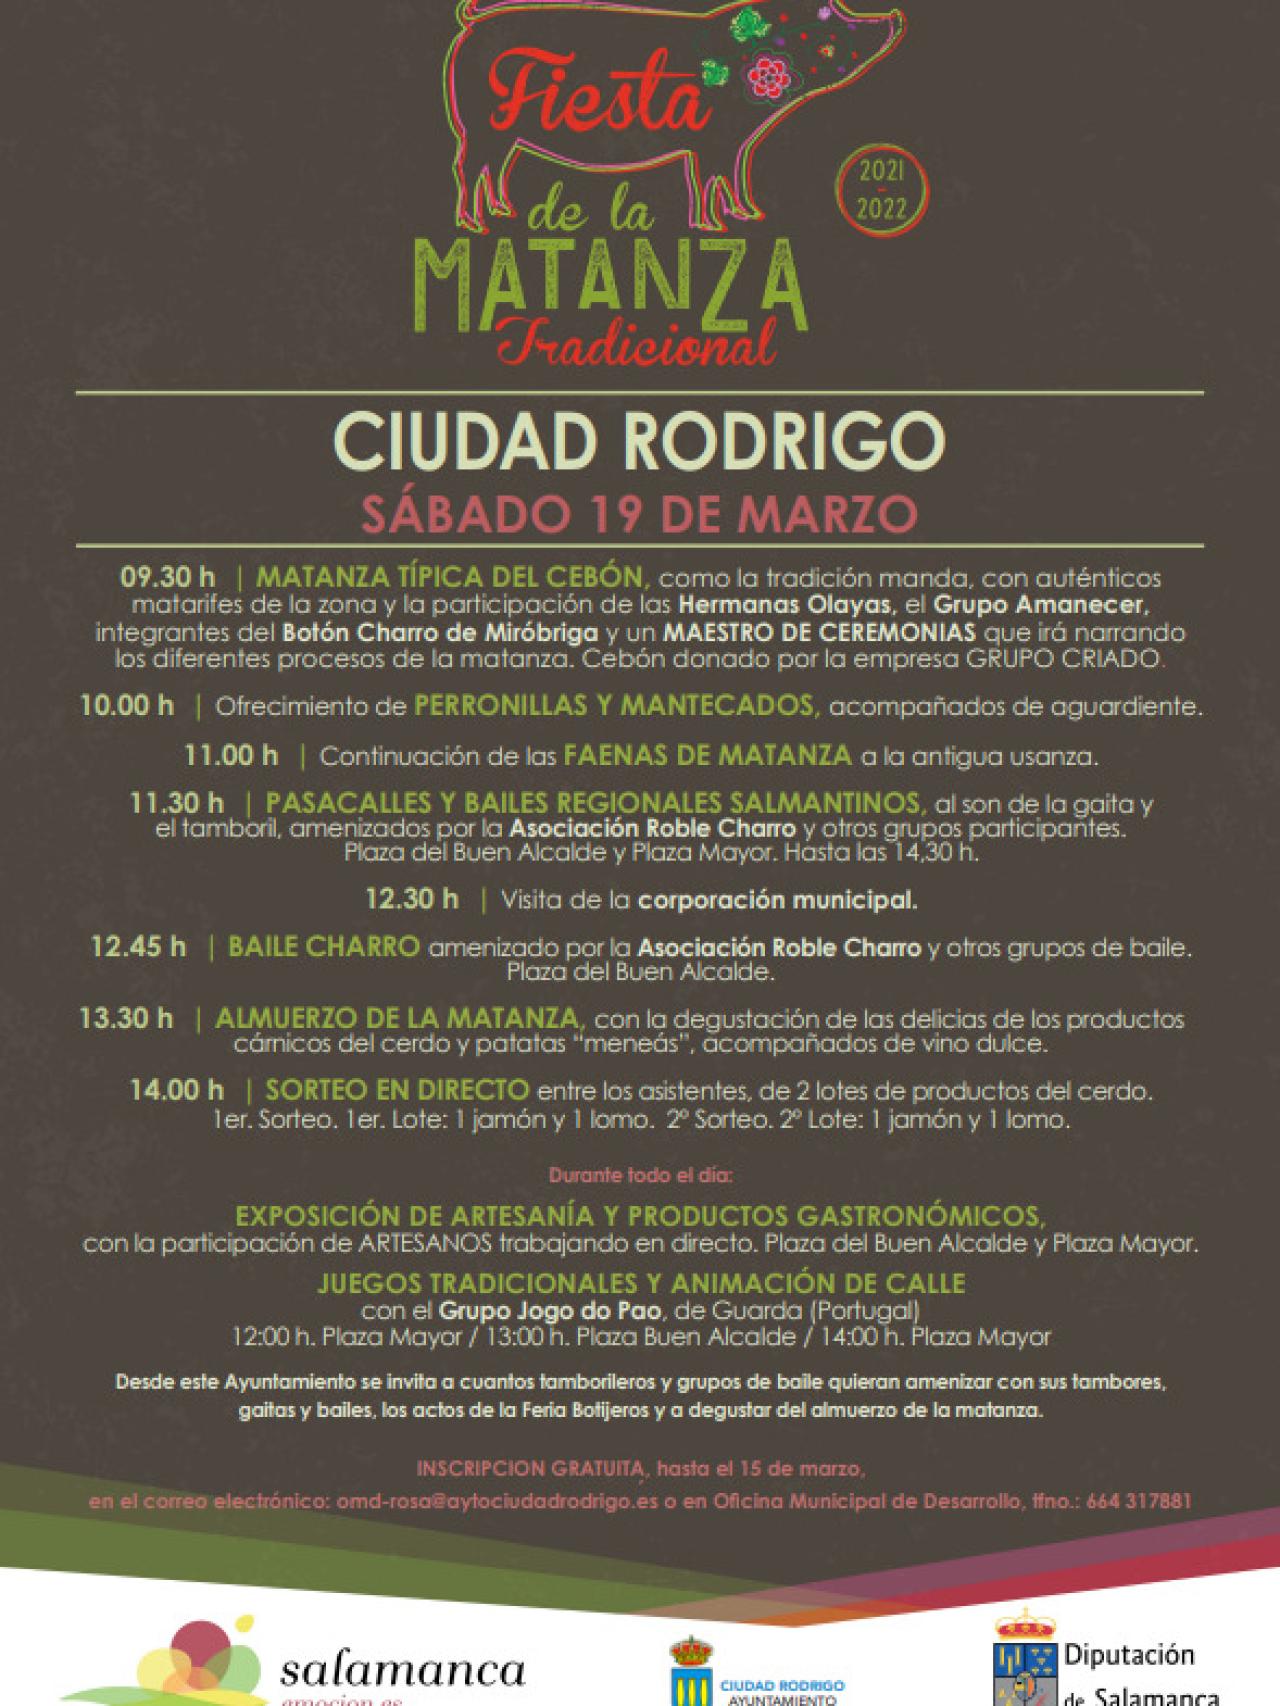 Cartel de la fiesta de la matanza tradicional de Ciudad Rodrigo